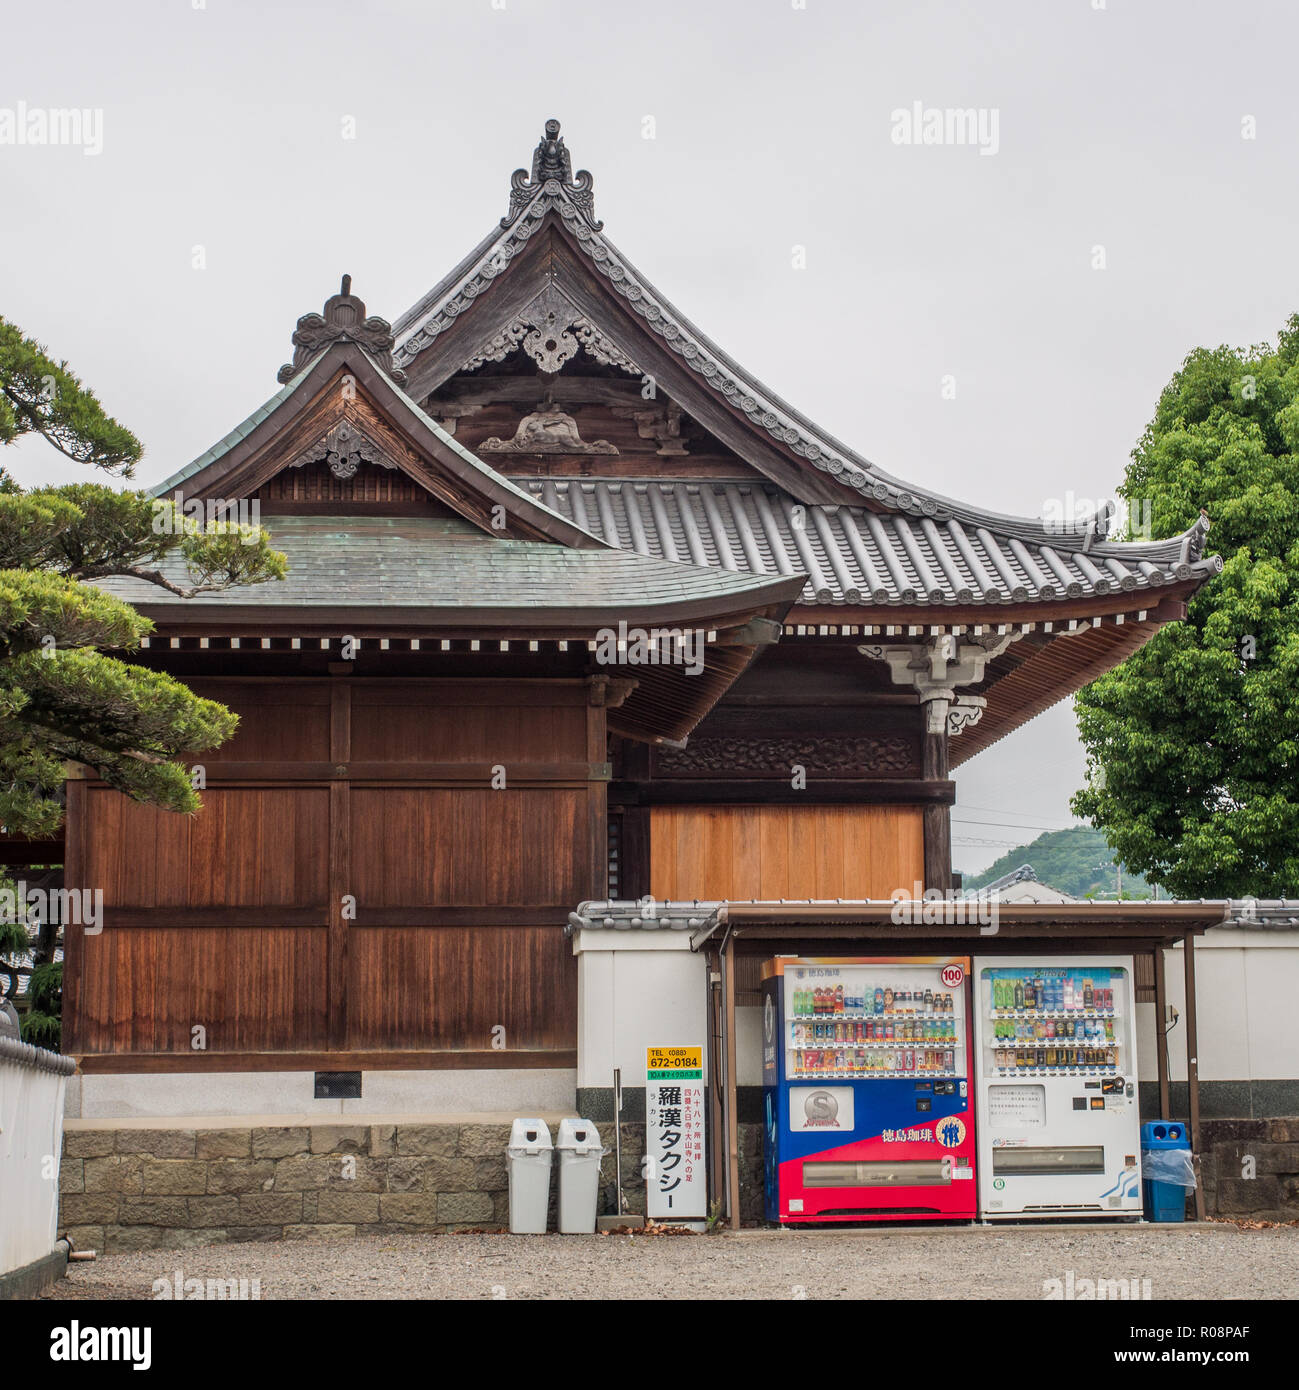 Vending machines, Jizoji temple 5, Shikoku 88 temple pilgrimage, Tokushima, Japan Stock Photo